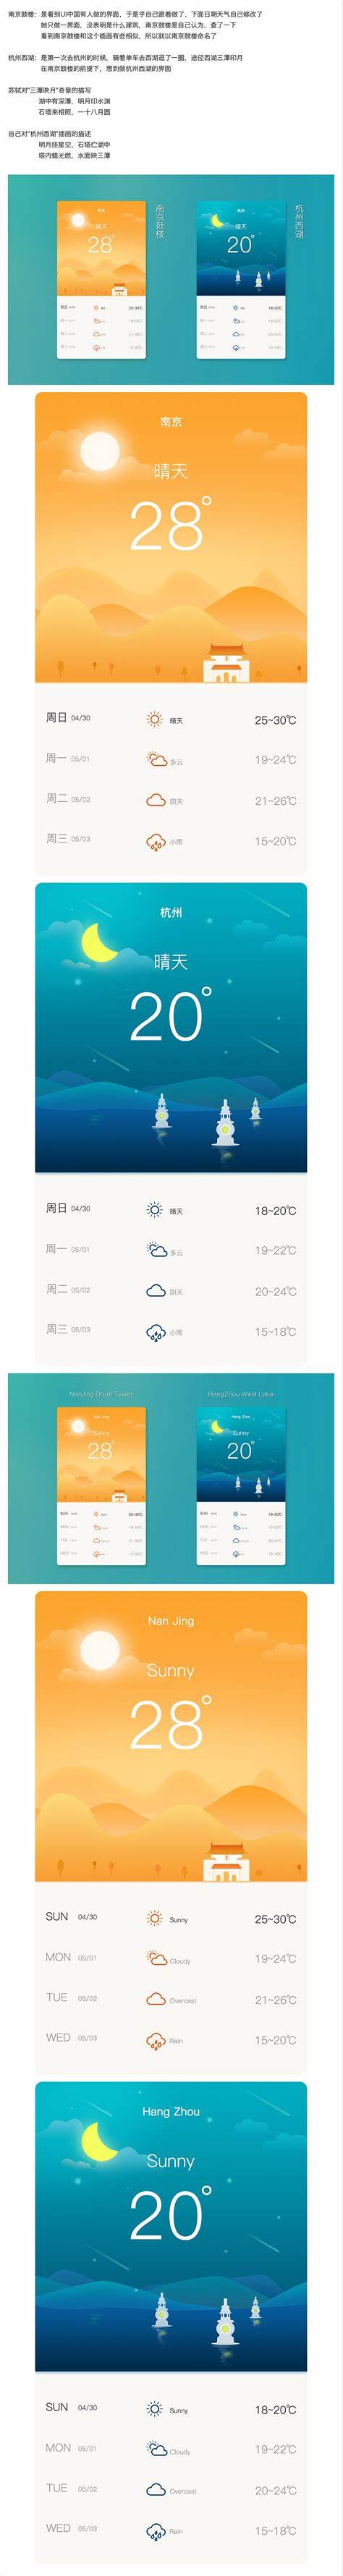 杭州西湖天气预报15天查询结果